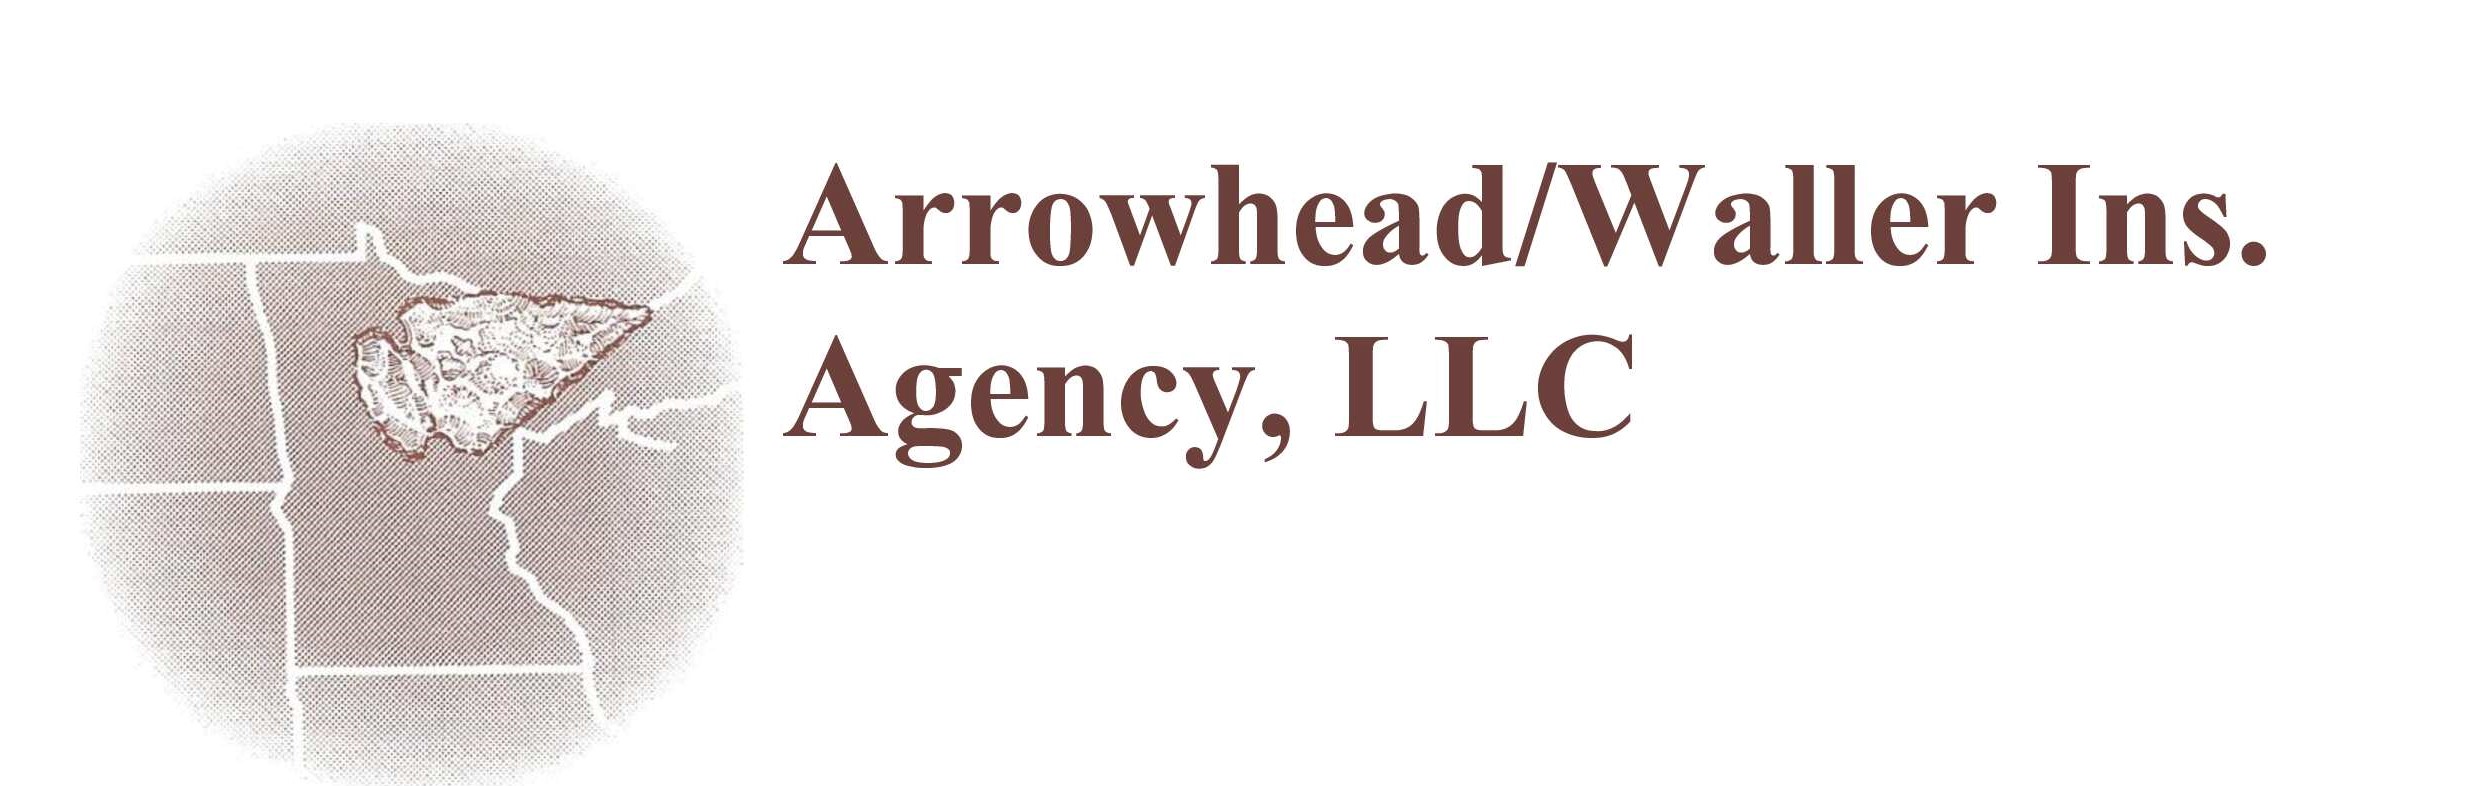 Arrowhead Waller Insurance Agency